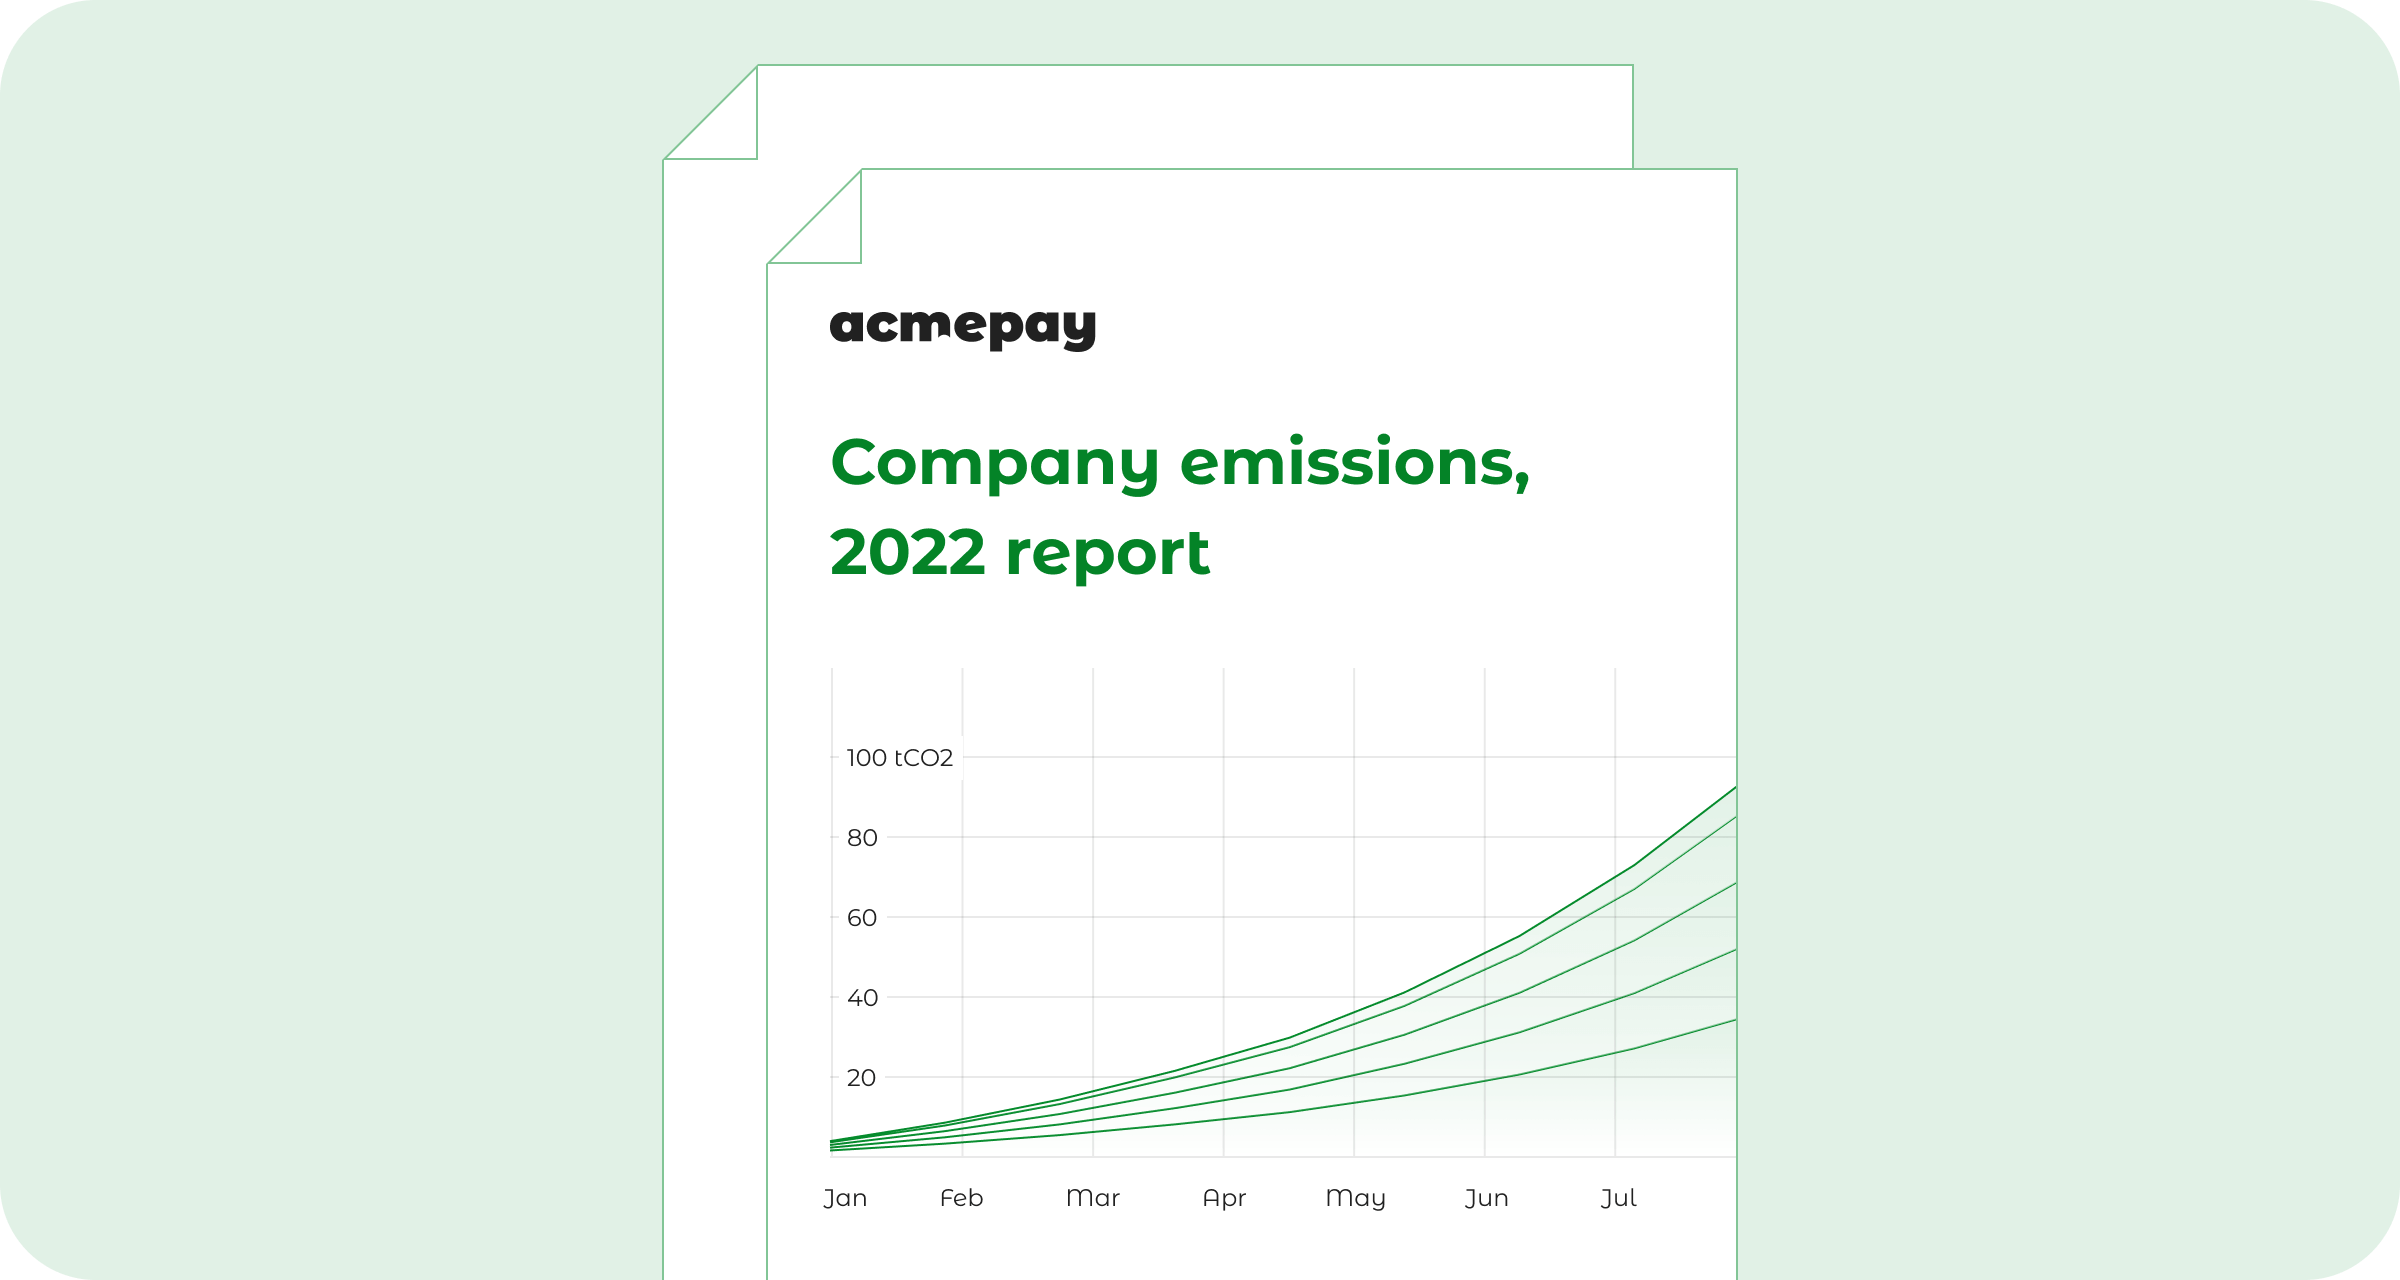 Company emissions 2022 report